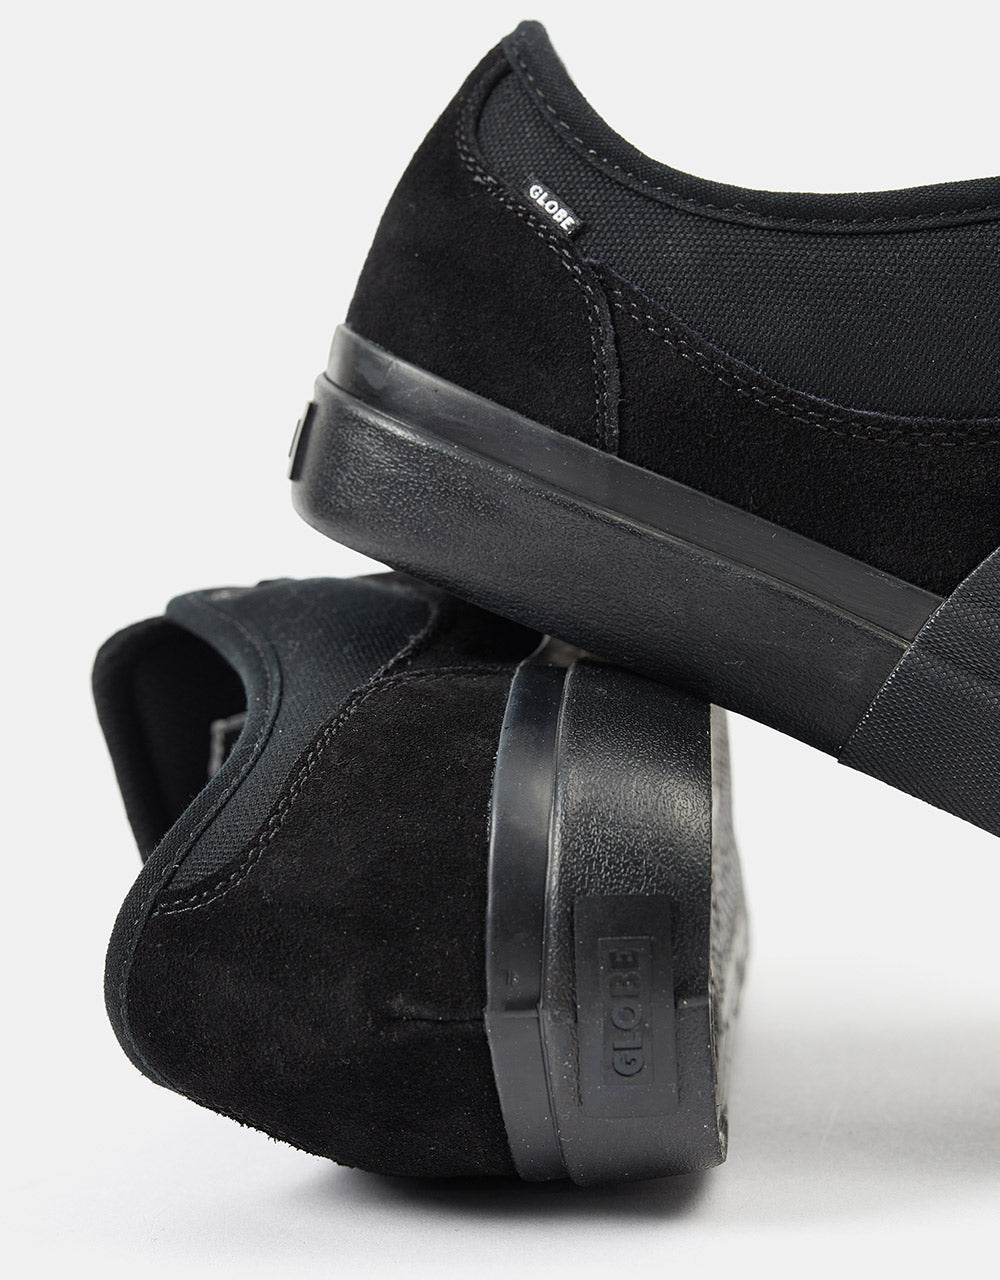 Globe Mahalo Plus Skate Shoes - Black/Black Wrap